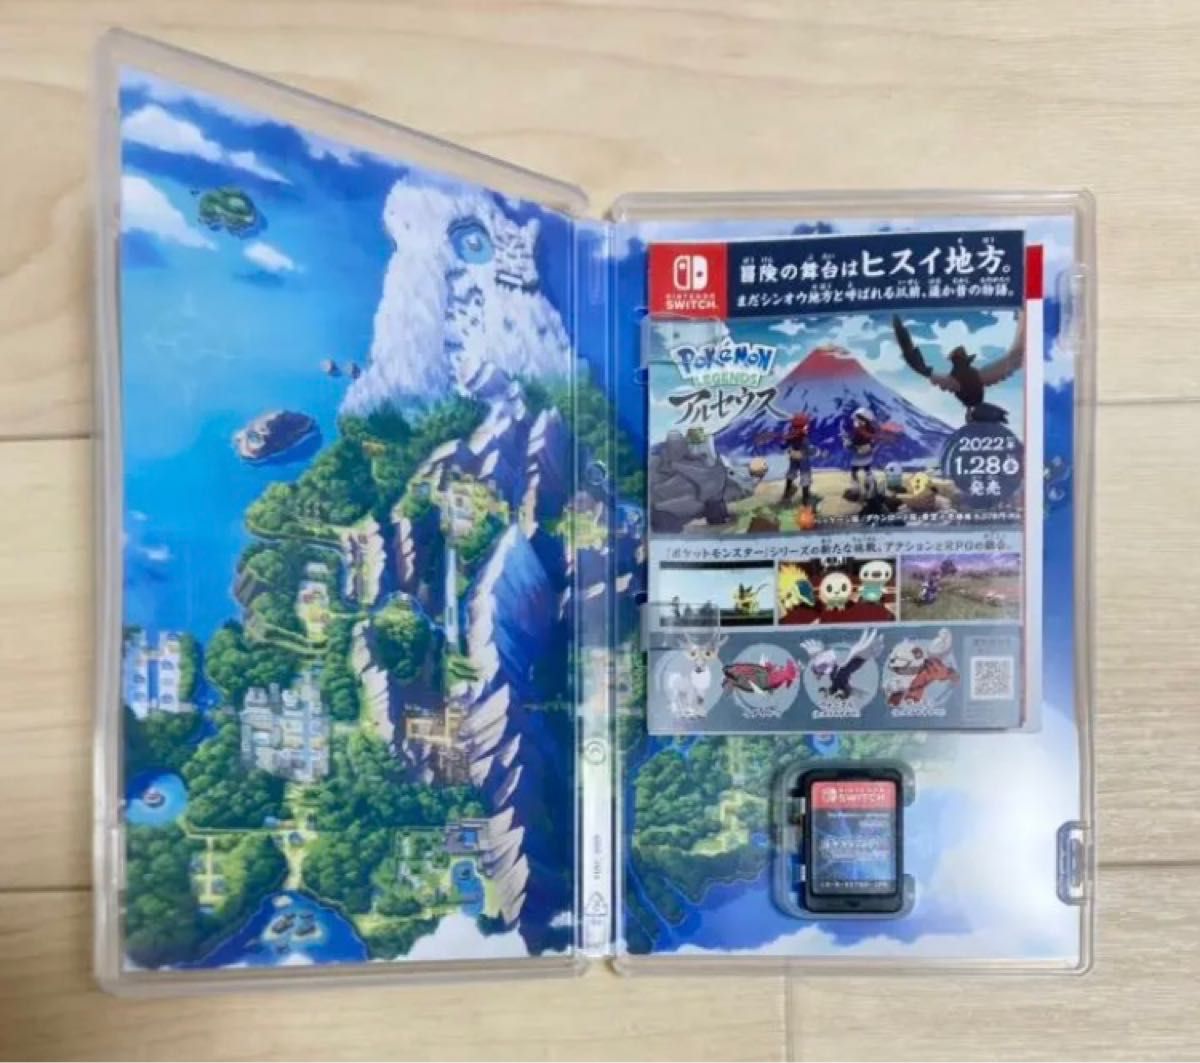 【オマケ付き】ポケットモンスター ブリリアントダイヤモンド Nintendo Switch